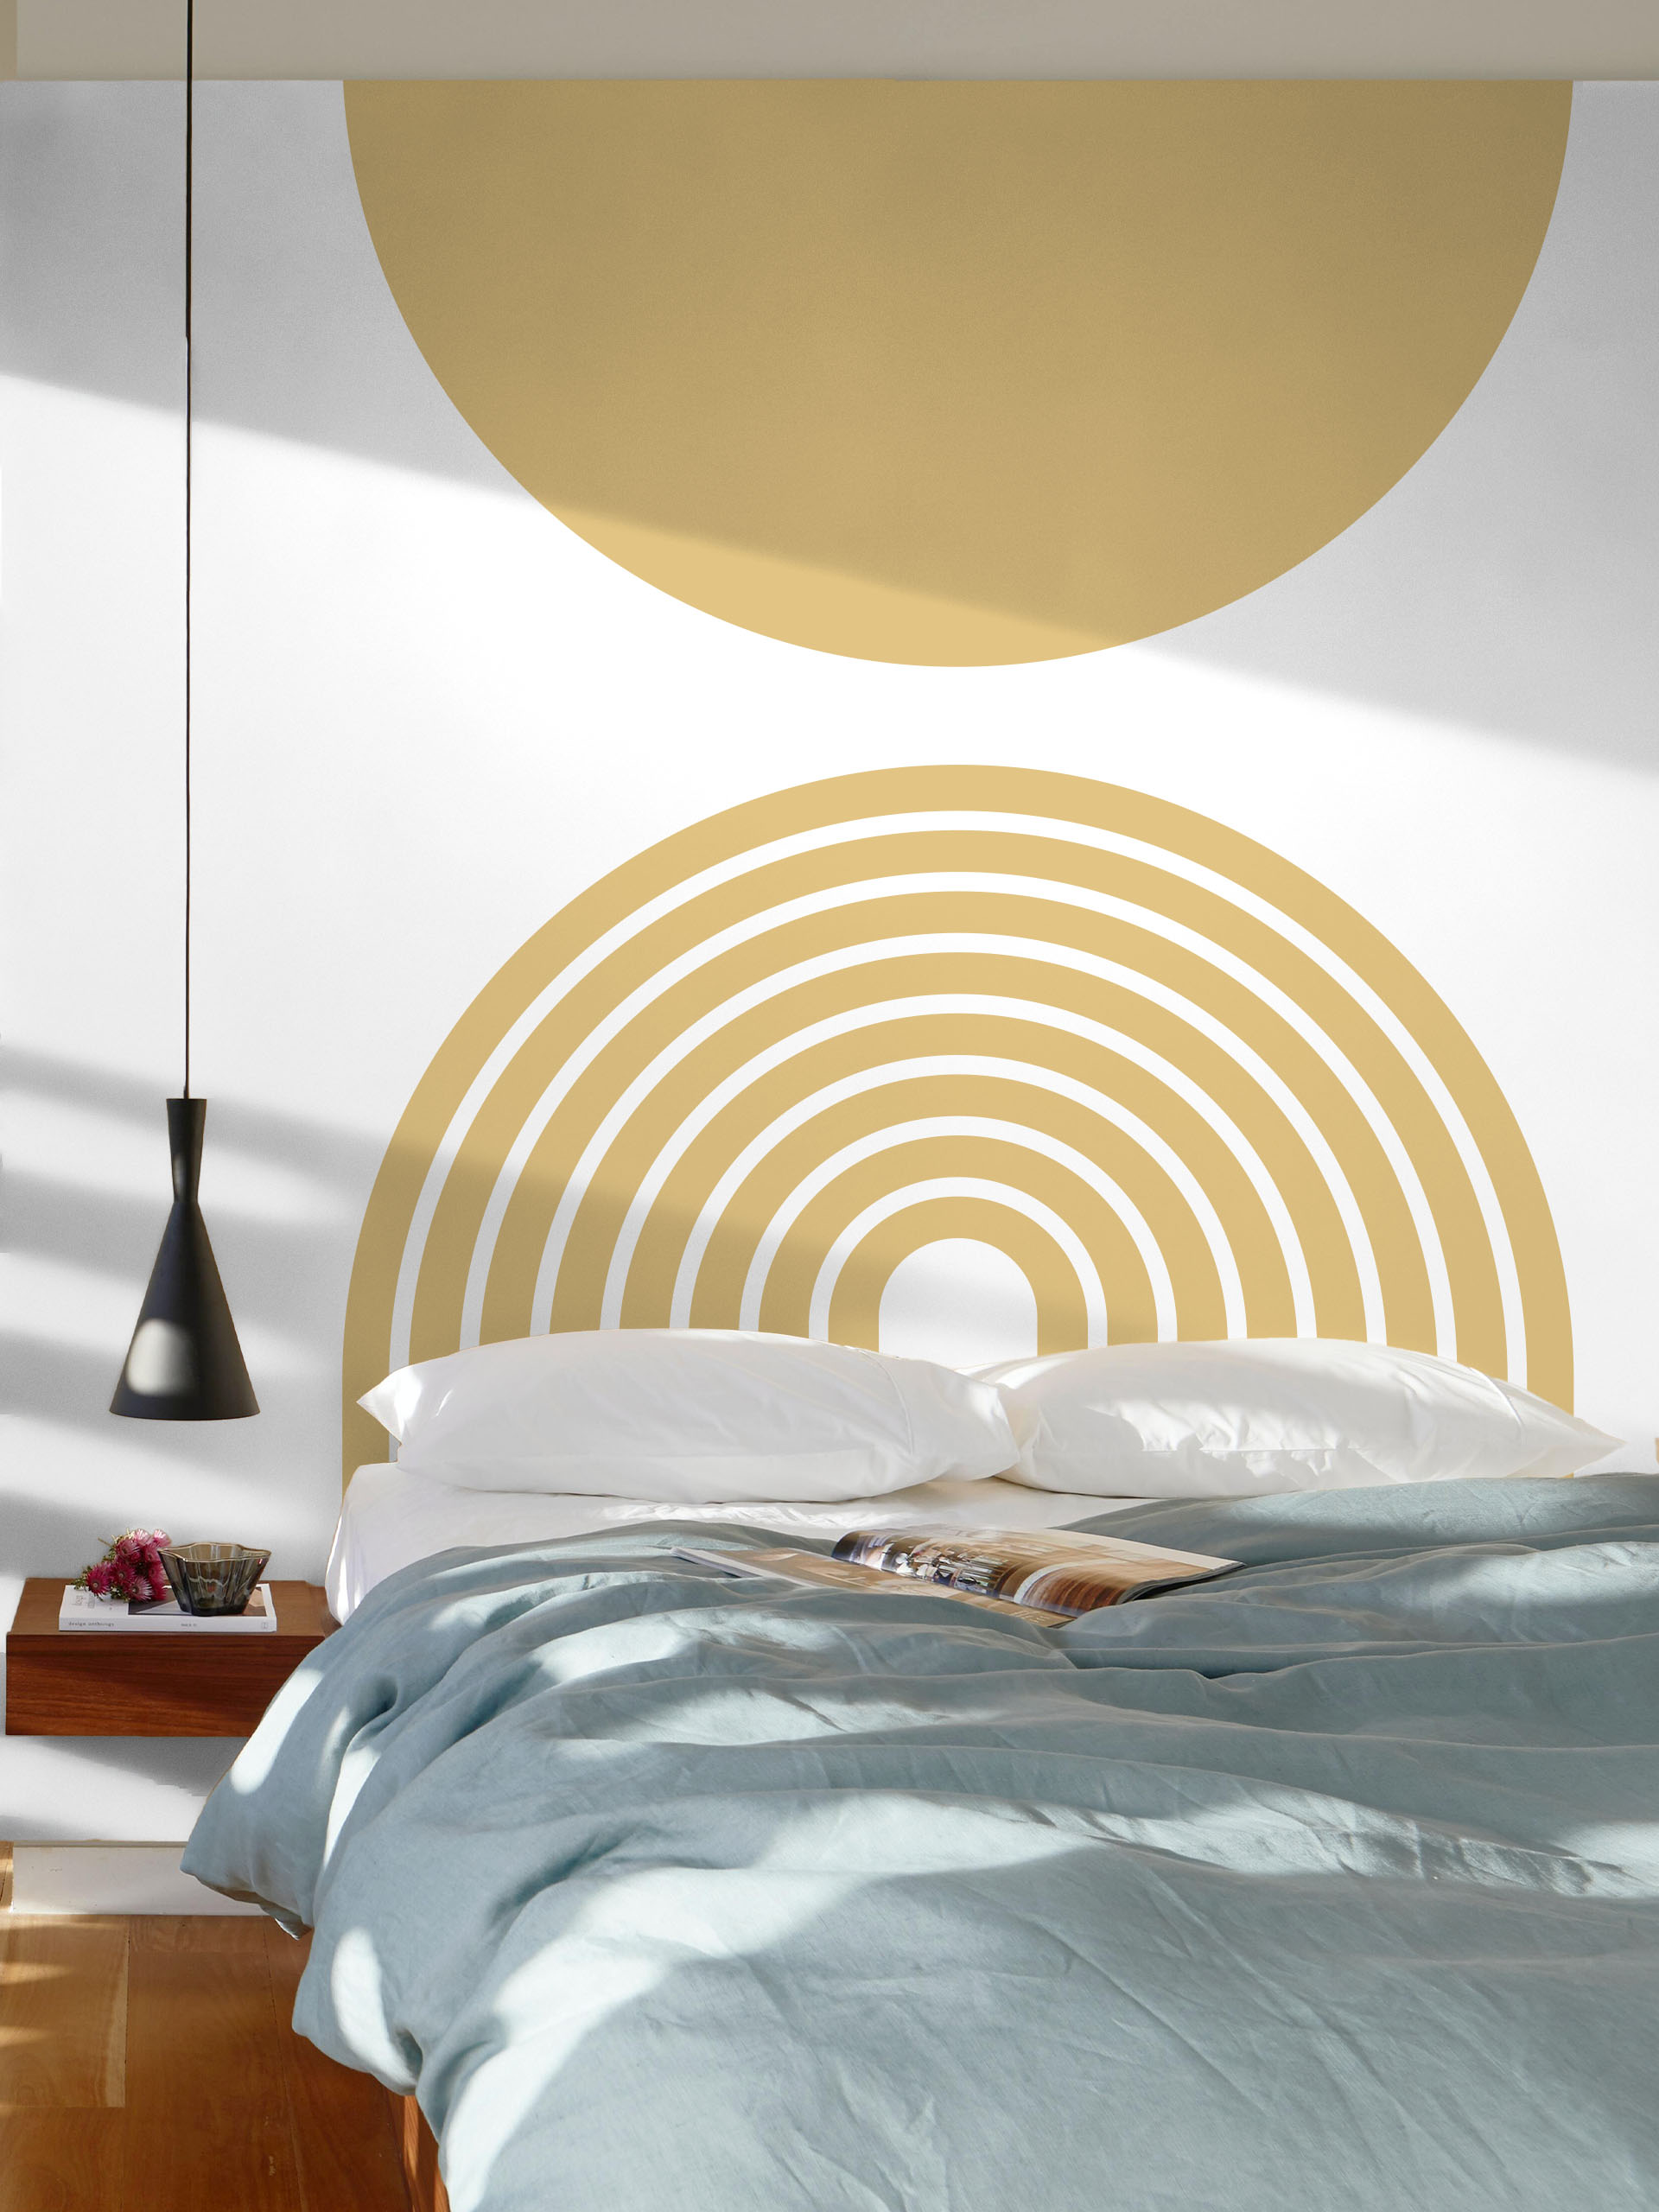 Papel pintado dormitorio sol geométrico amarillo mostaza